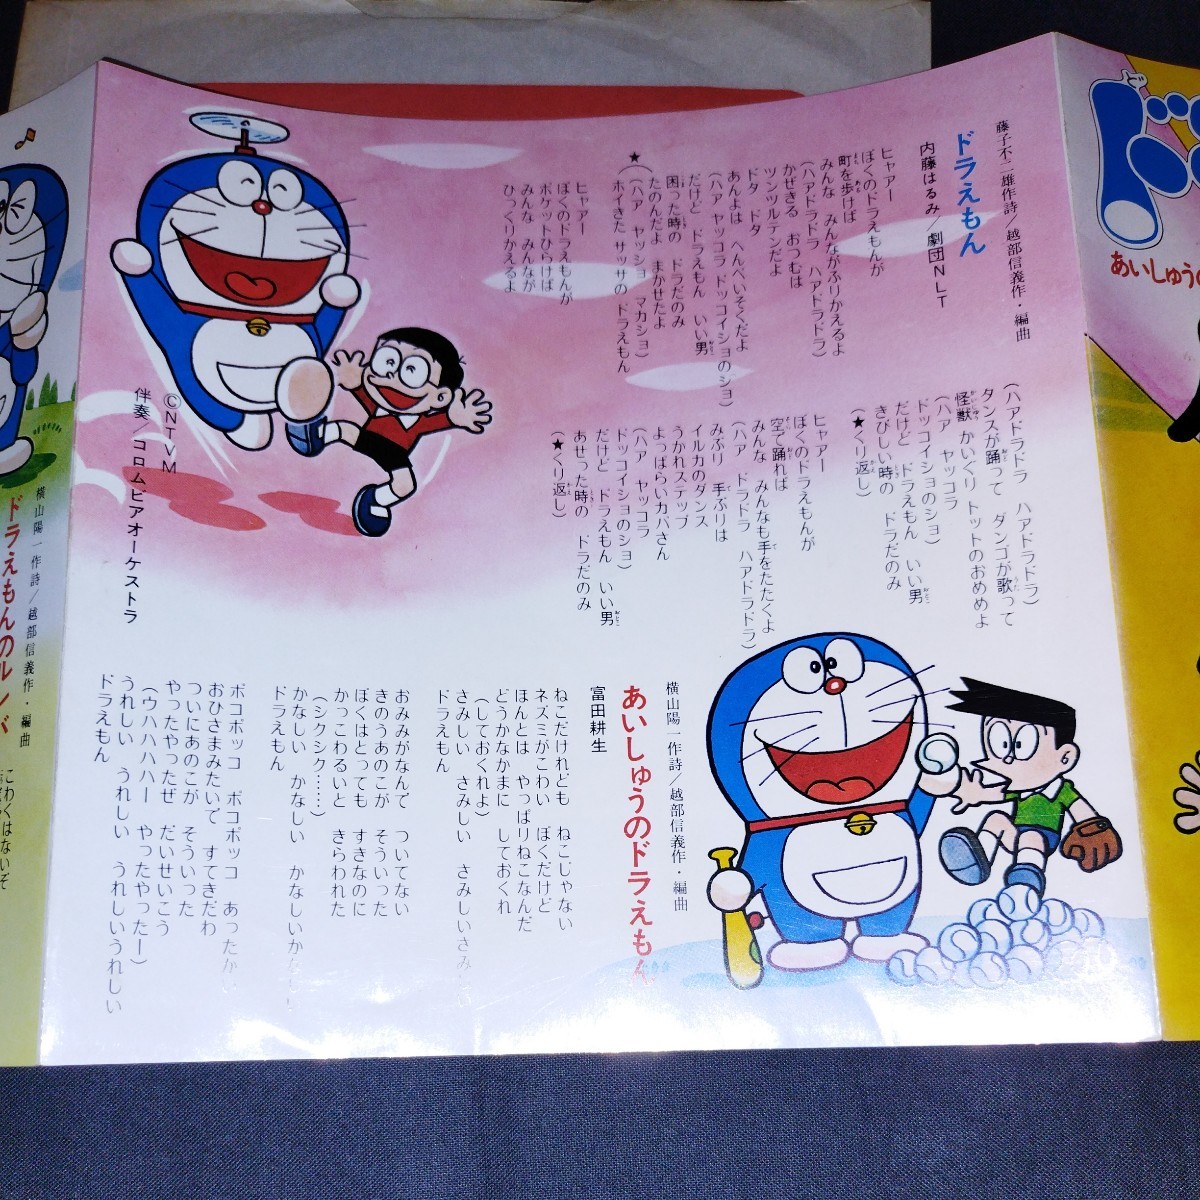  внутри глициния. .. Doraemon глициния . не 2 самец 